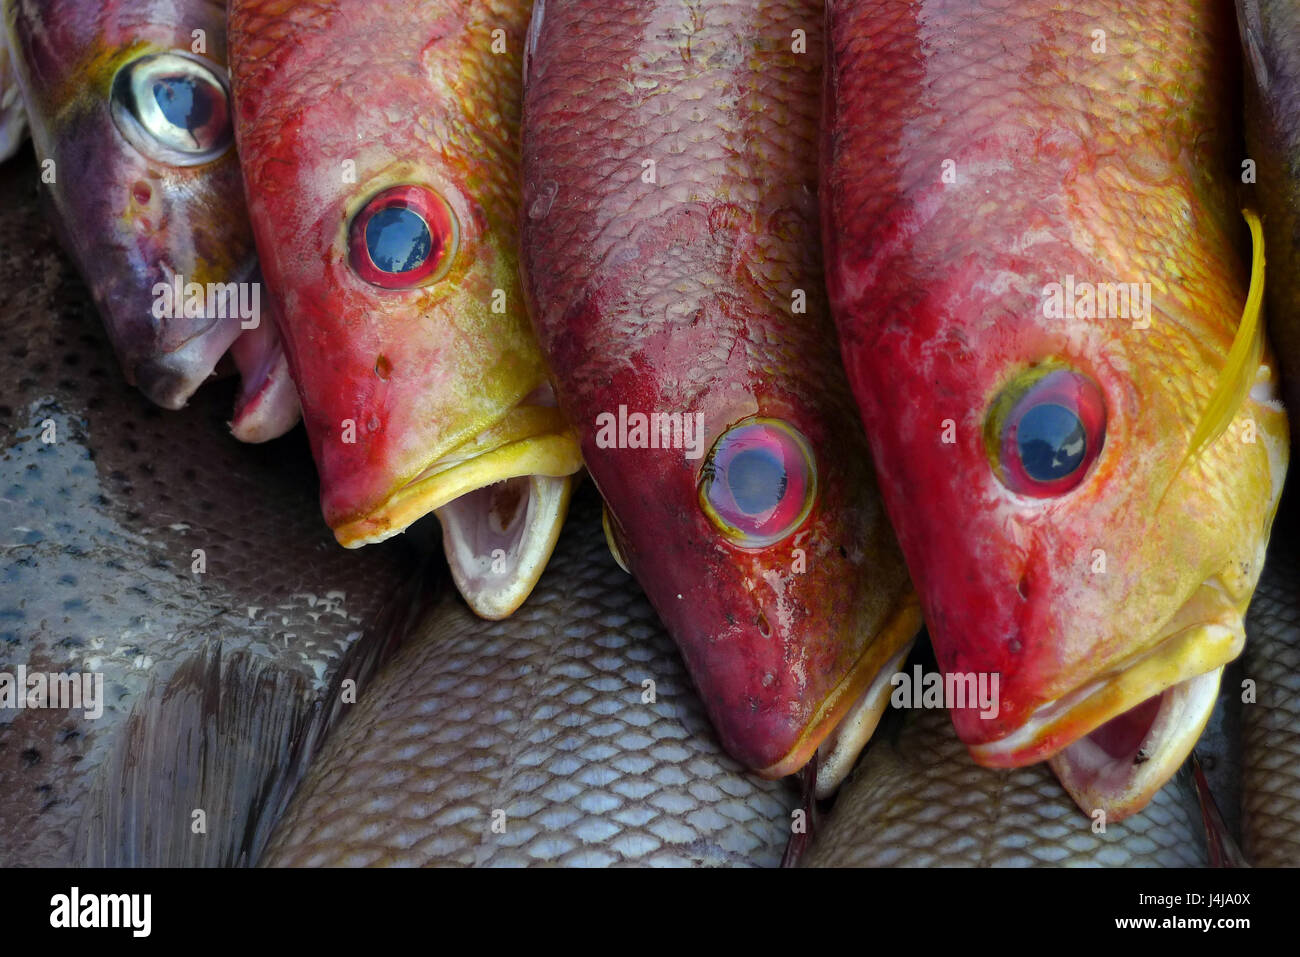 Tre pesci di mare scale rosso, le alette sono il giallo e il blu, occhi  rotondi, bocche aperte, come una sorpresa, mare freschi al mercato del pesce  Foto stock - Alamy